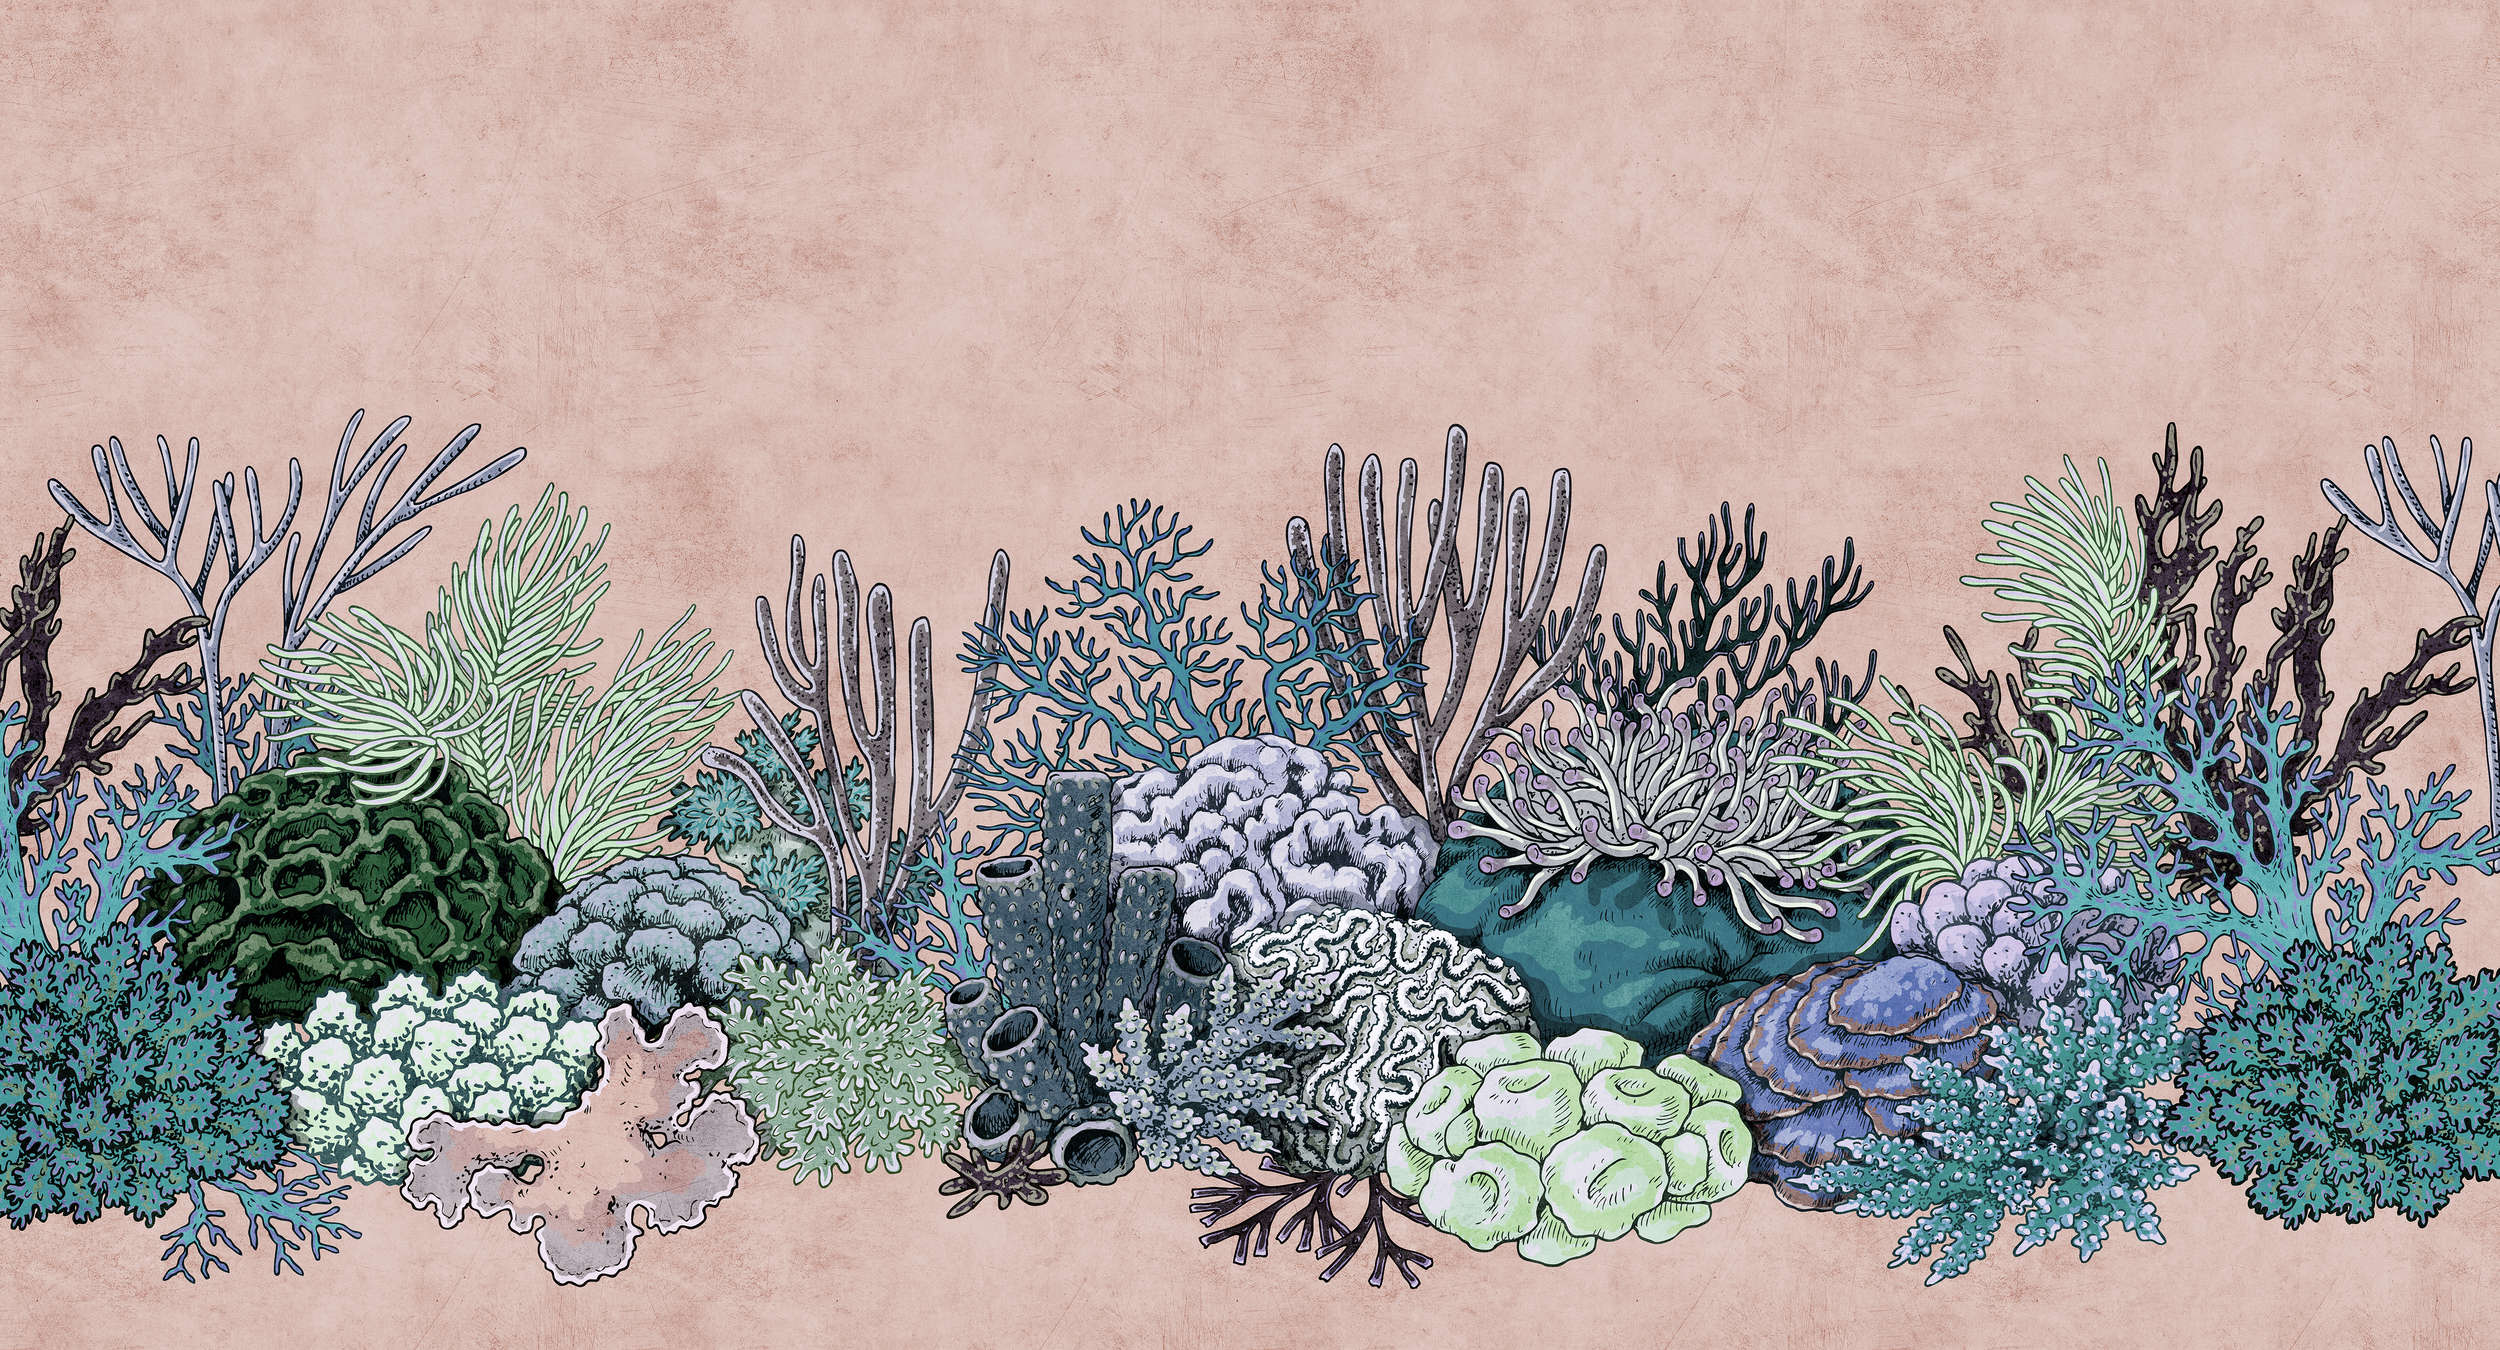             Octopus's Garden 2 - Papel pintado Coral en estructura de papel secante estilo dibujo - Verde, Rosa | Perla liso no tejido
        